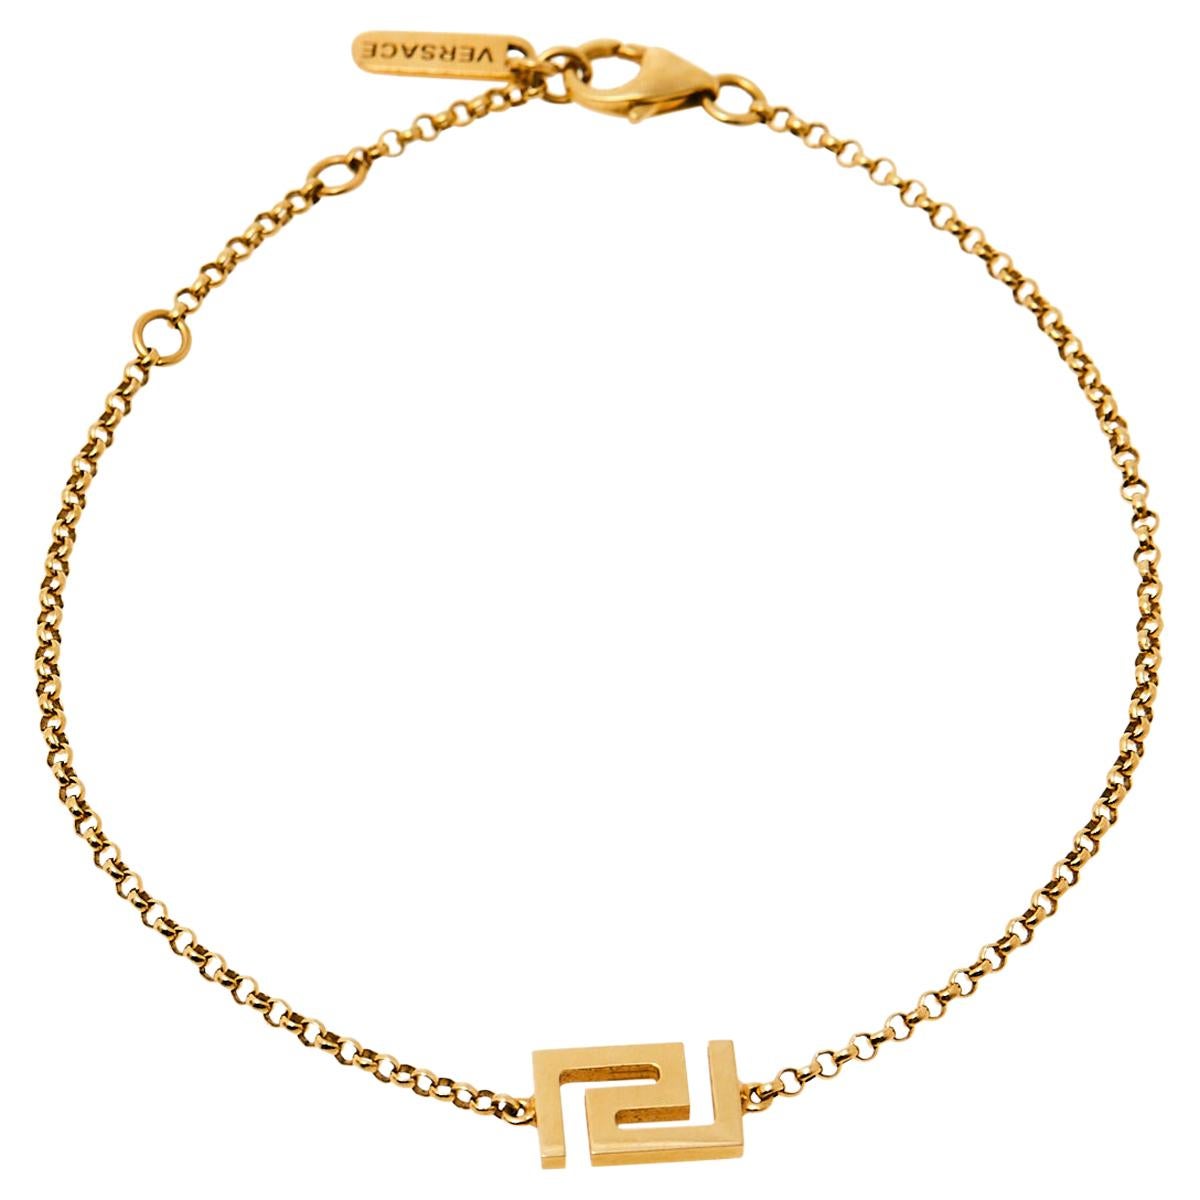 Versace Bracelet 18k - For Sale on 1stDibs